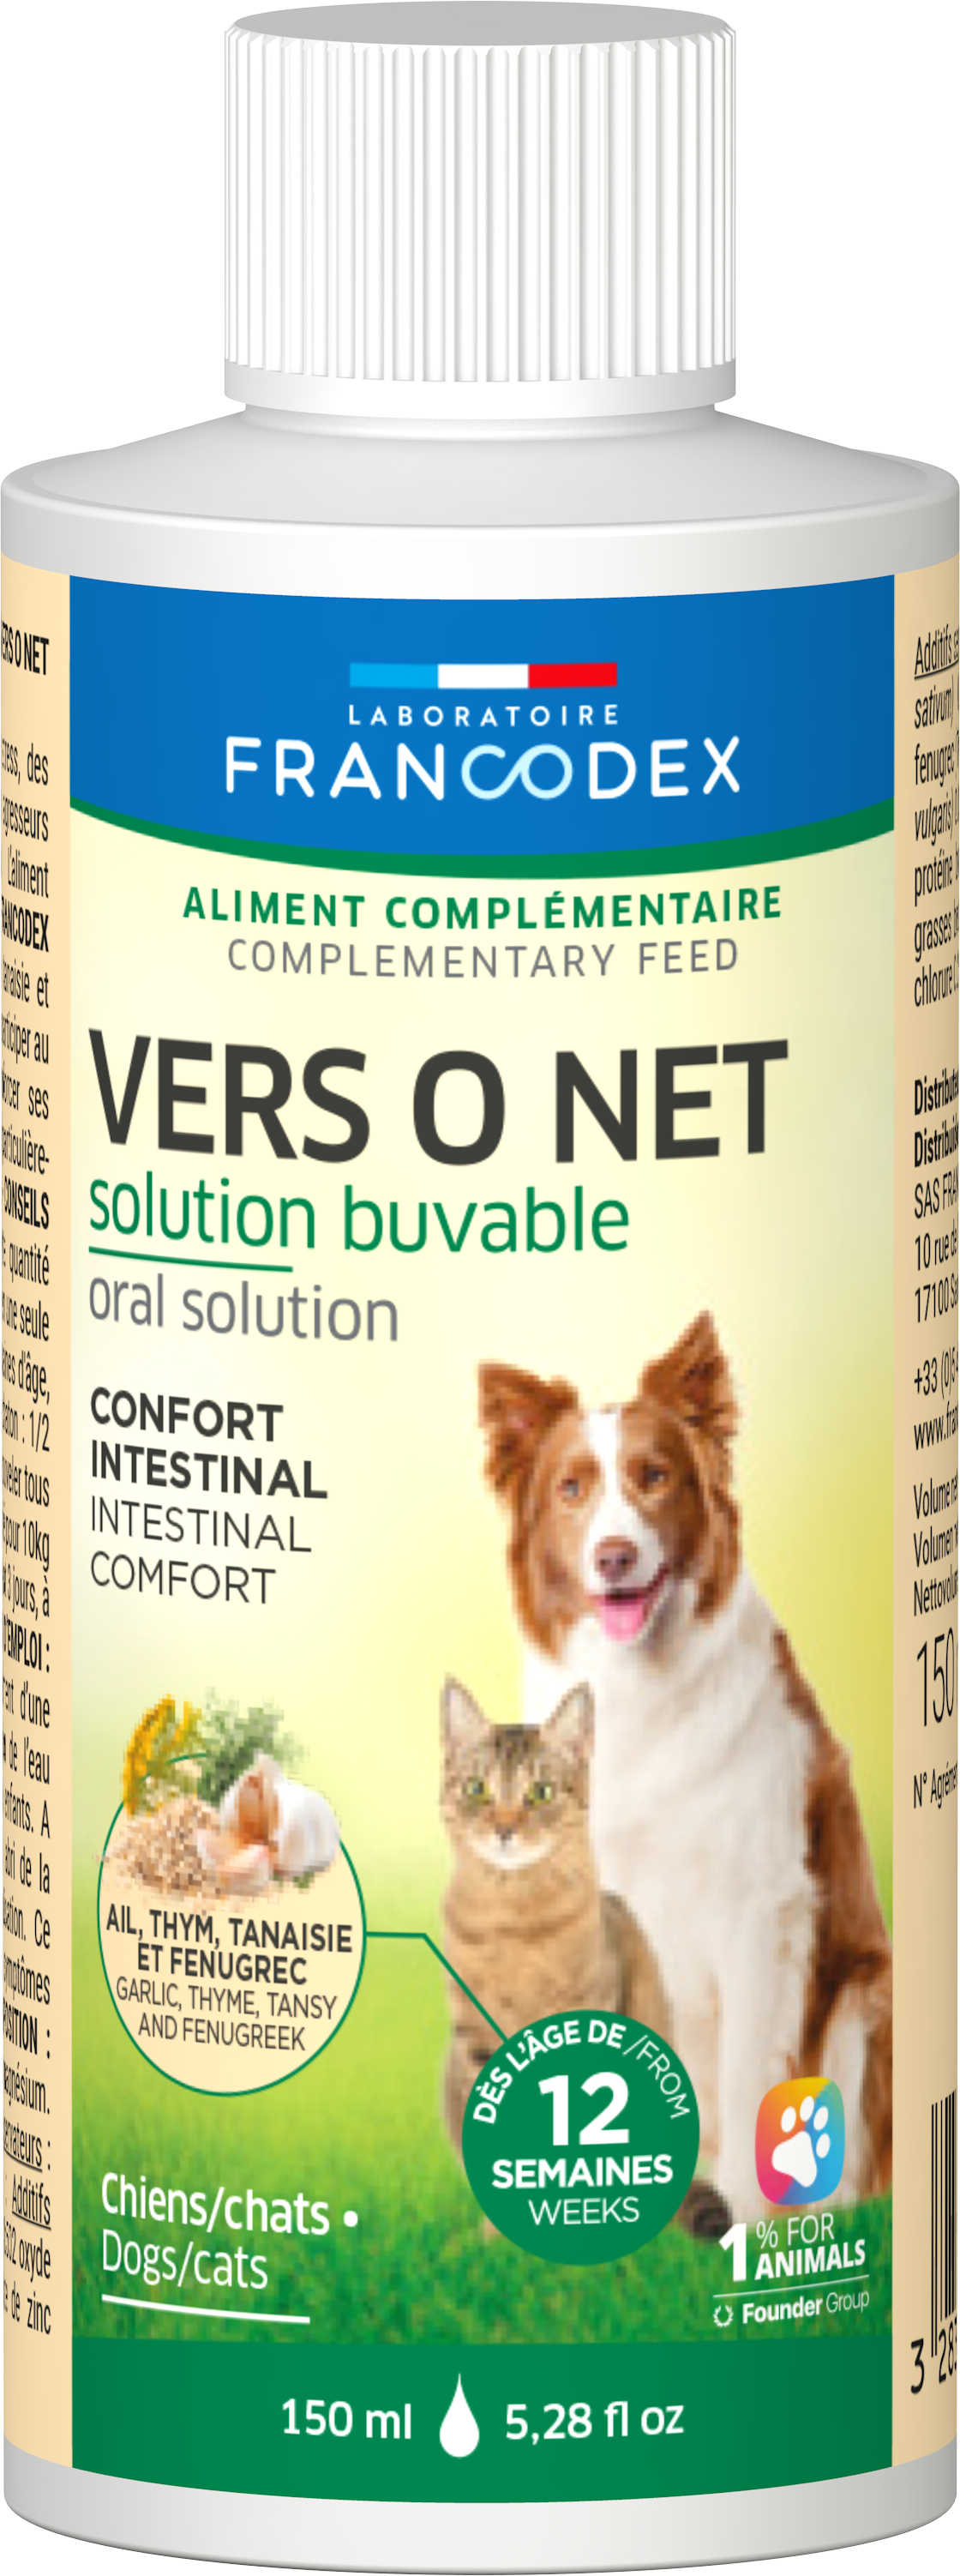 Francodex Vers o Net en líquido Confort intestinal para perros y gatos